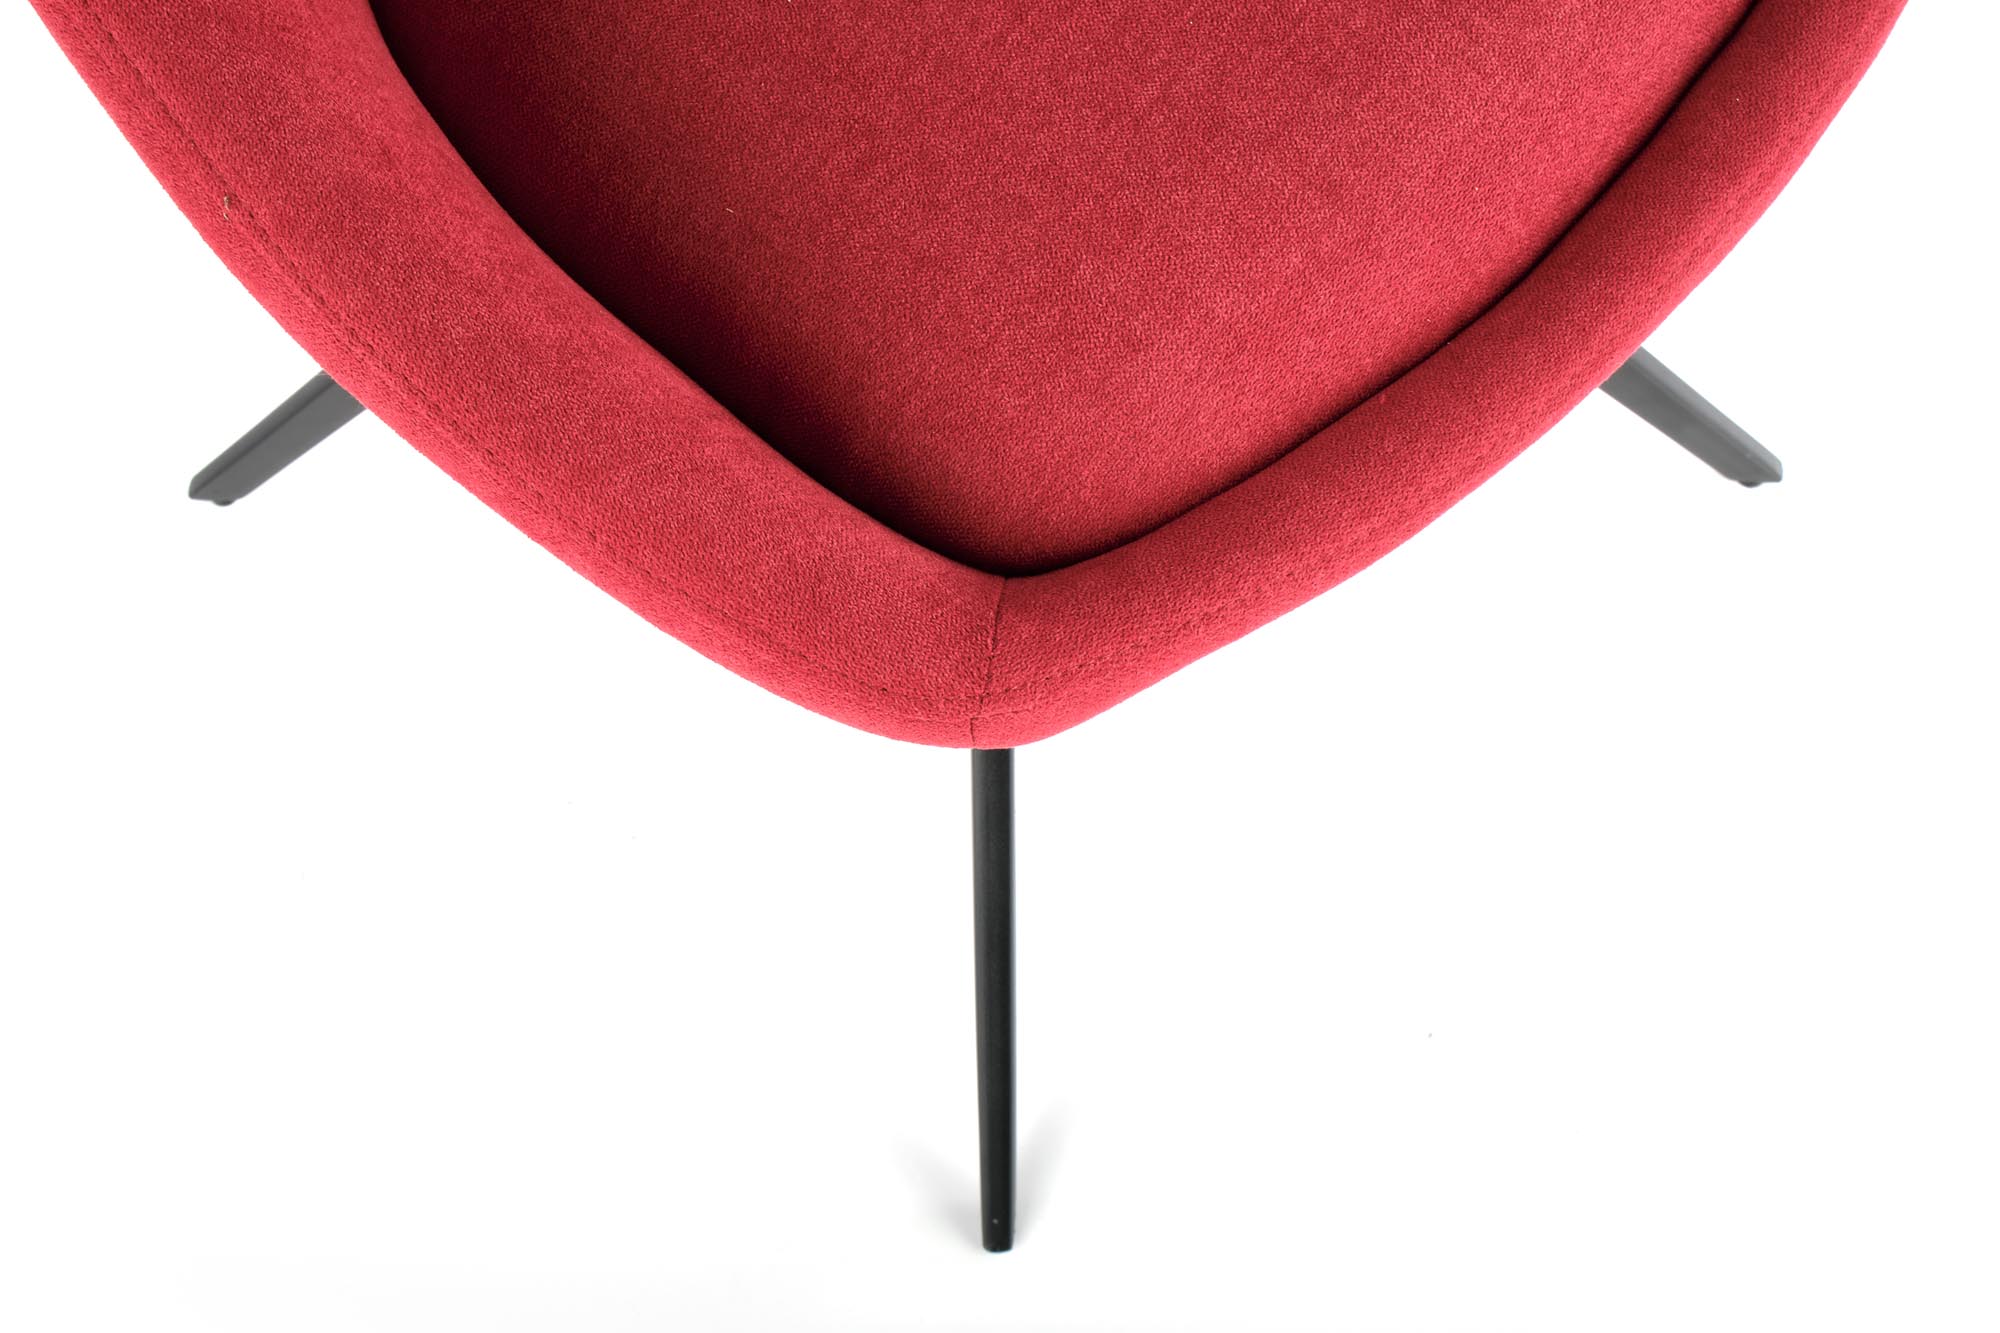 K431 stolica, boja: crvena